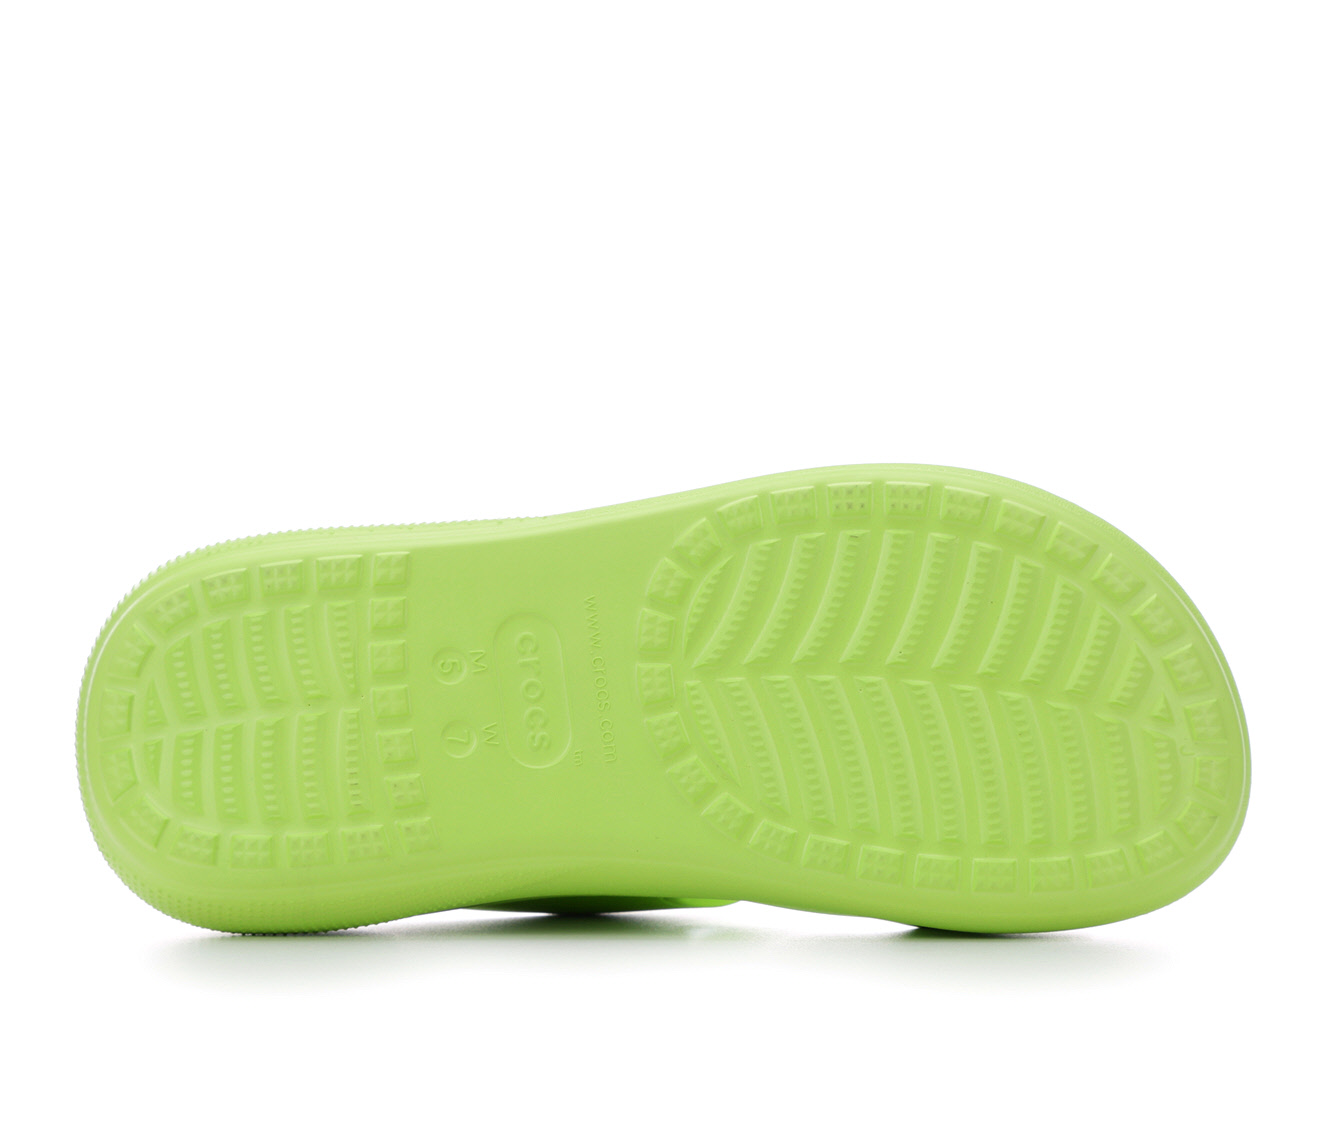 Women's Crocs Platform Sandals | Shoe Carnival